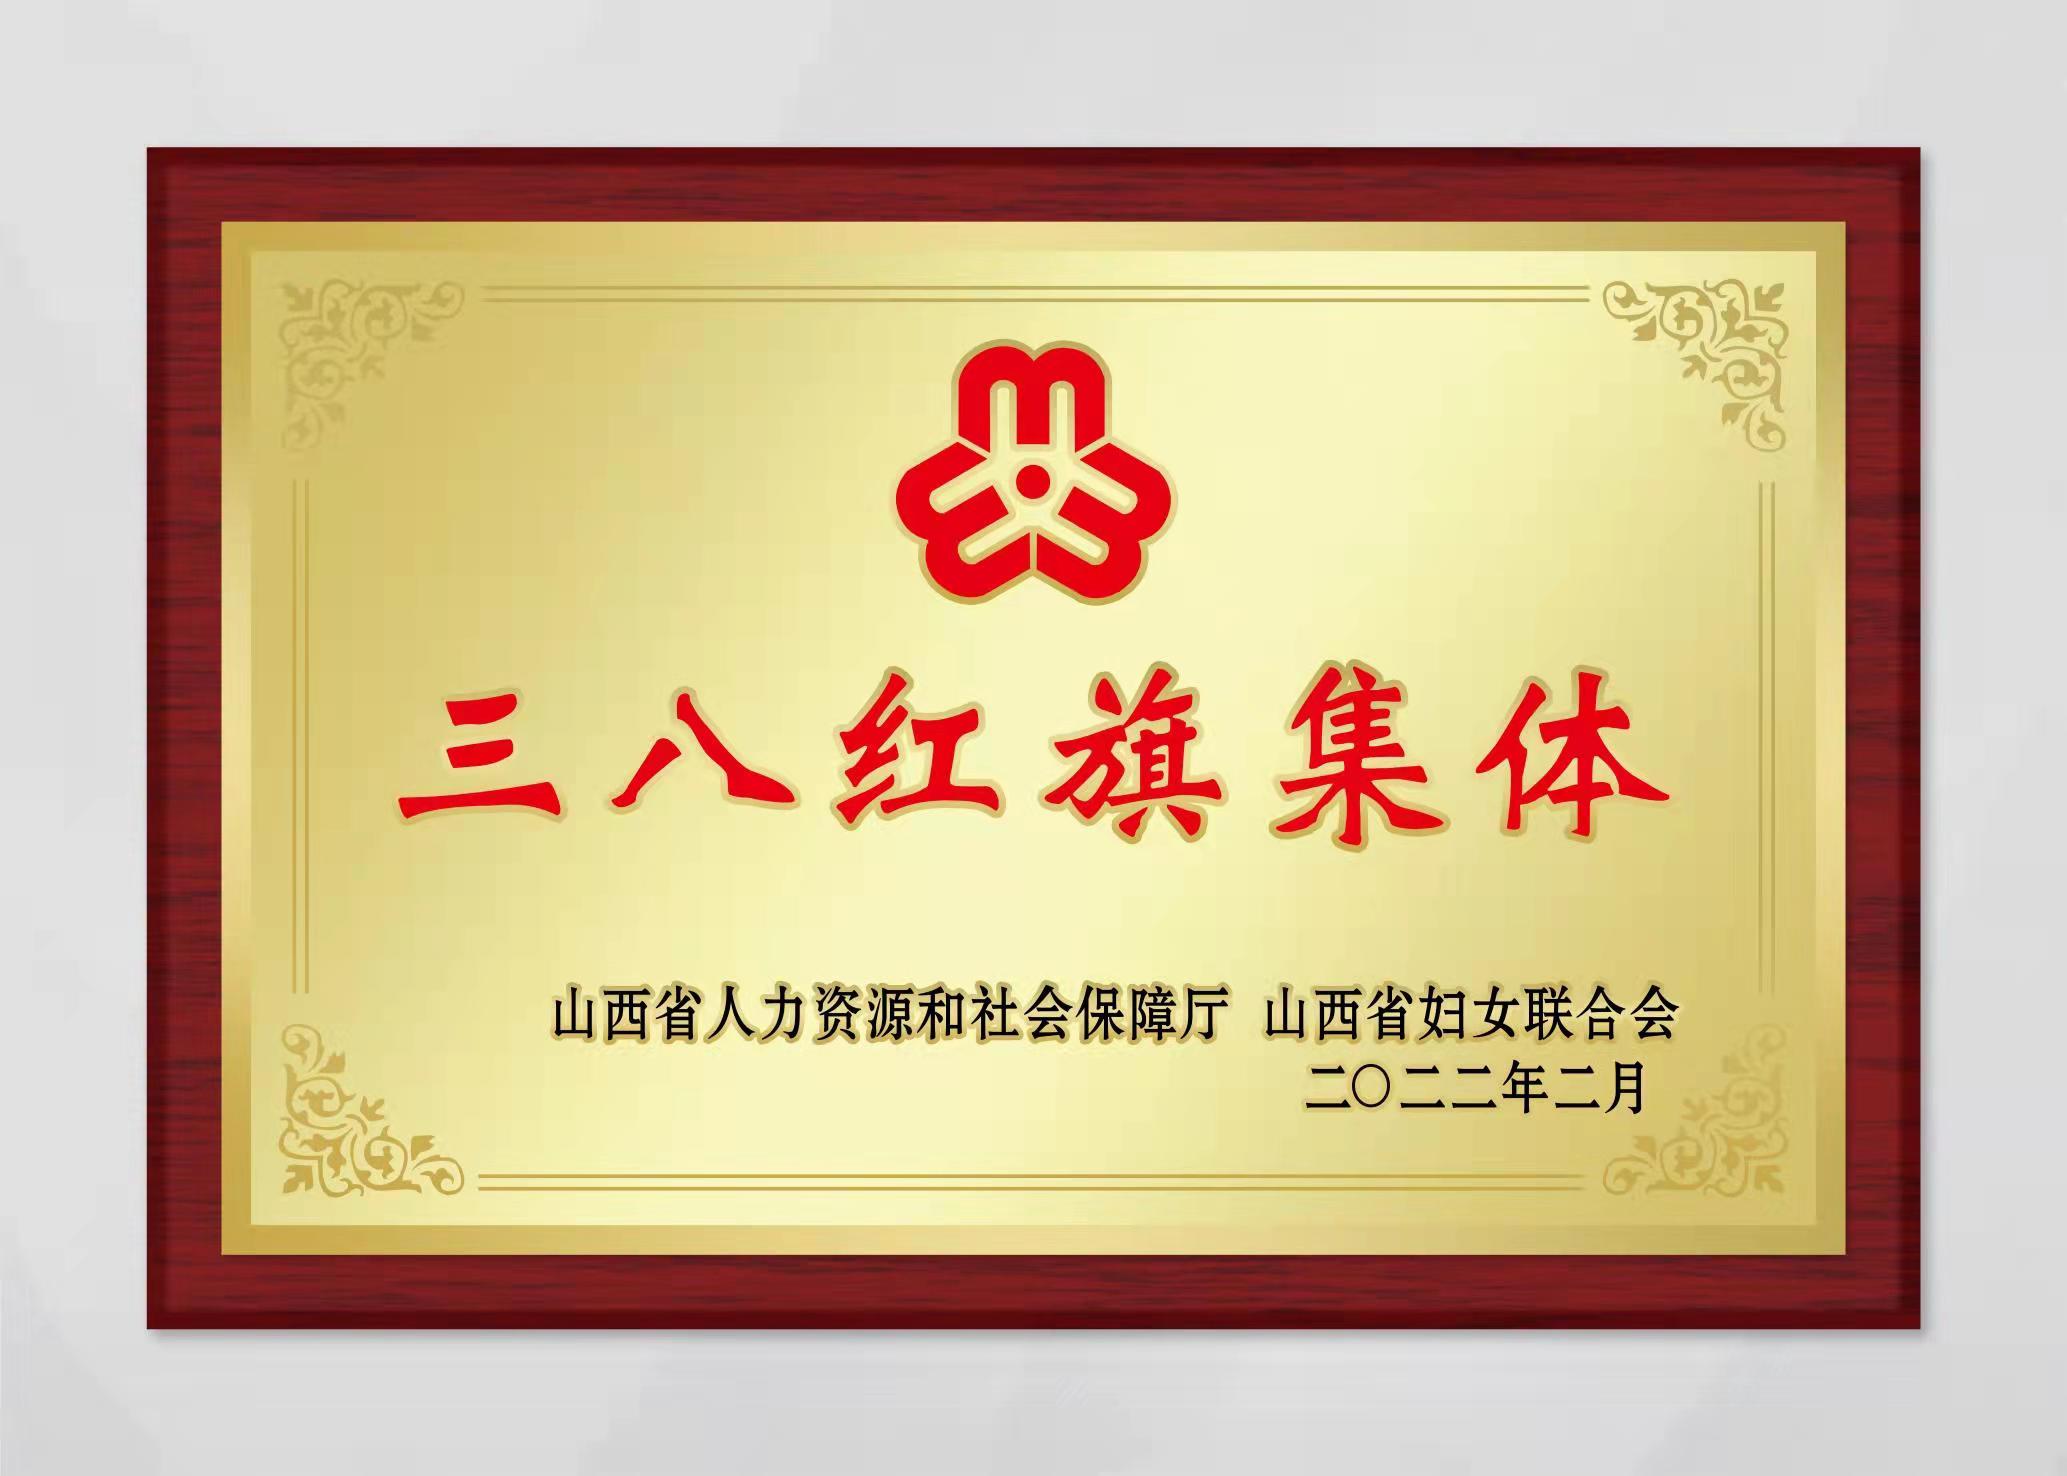 山西尊龙登录入口紫外光电科技有限公司被评为山西省三八妇女先进集体。